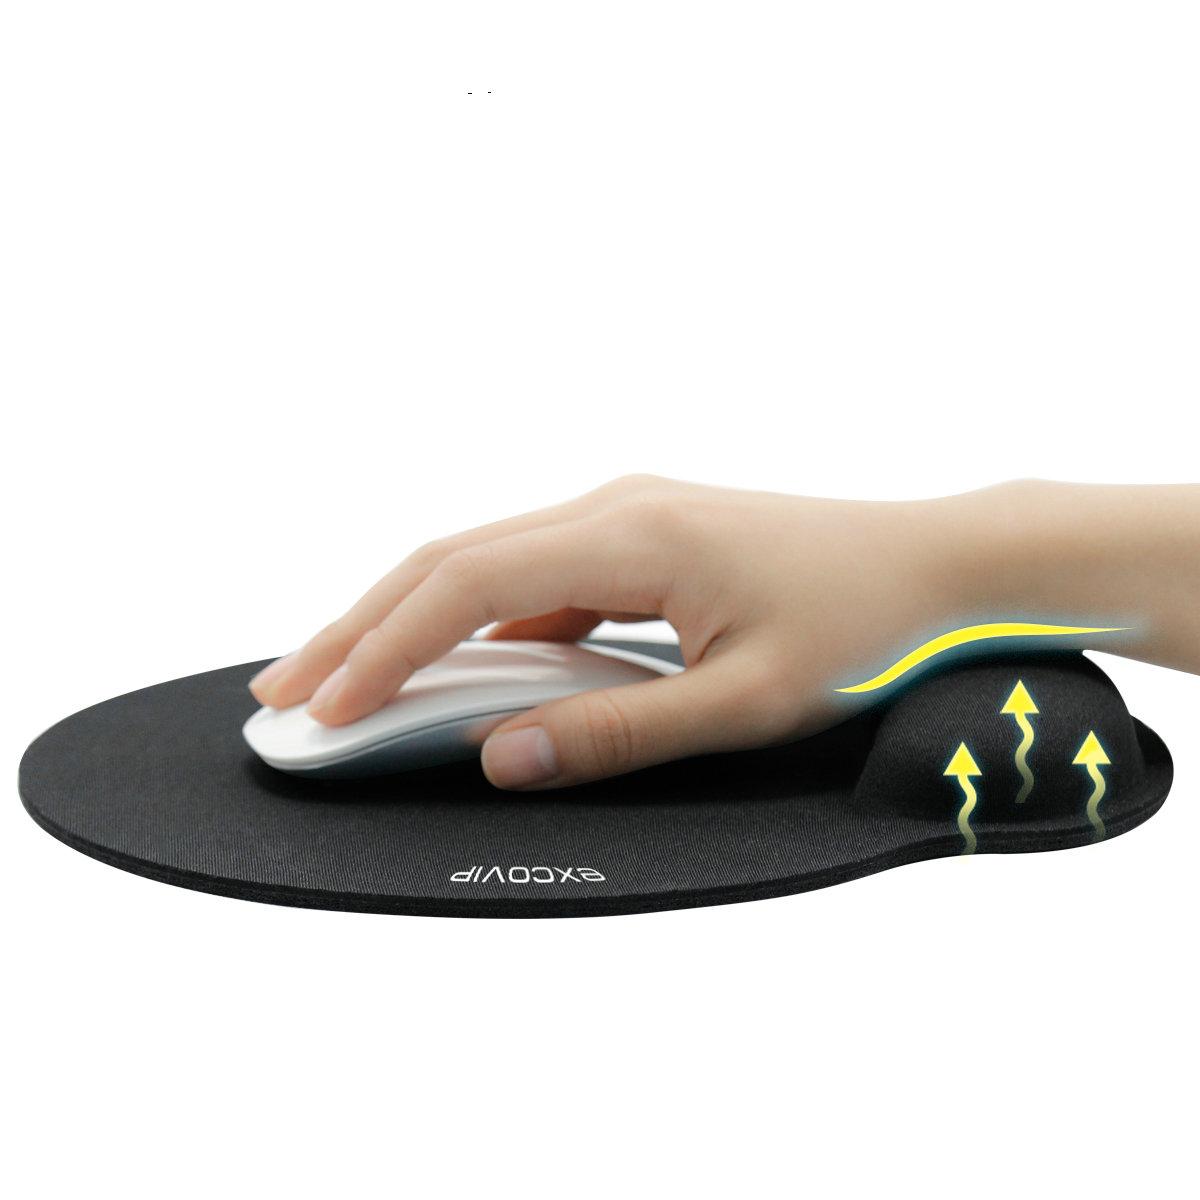 Изображение товара: Эргономичный коврик для мыши с упором для запястья, Нескользящий Резиновый коврик для мыши, 3D Аниме Коврик для мыши, поддержка запястья для компьютера, ноутбука